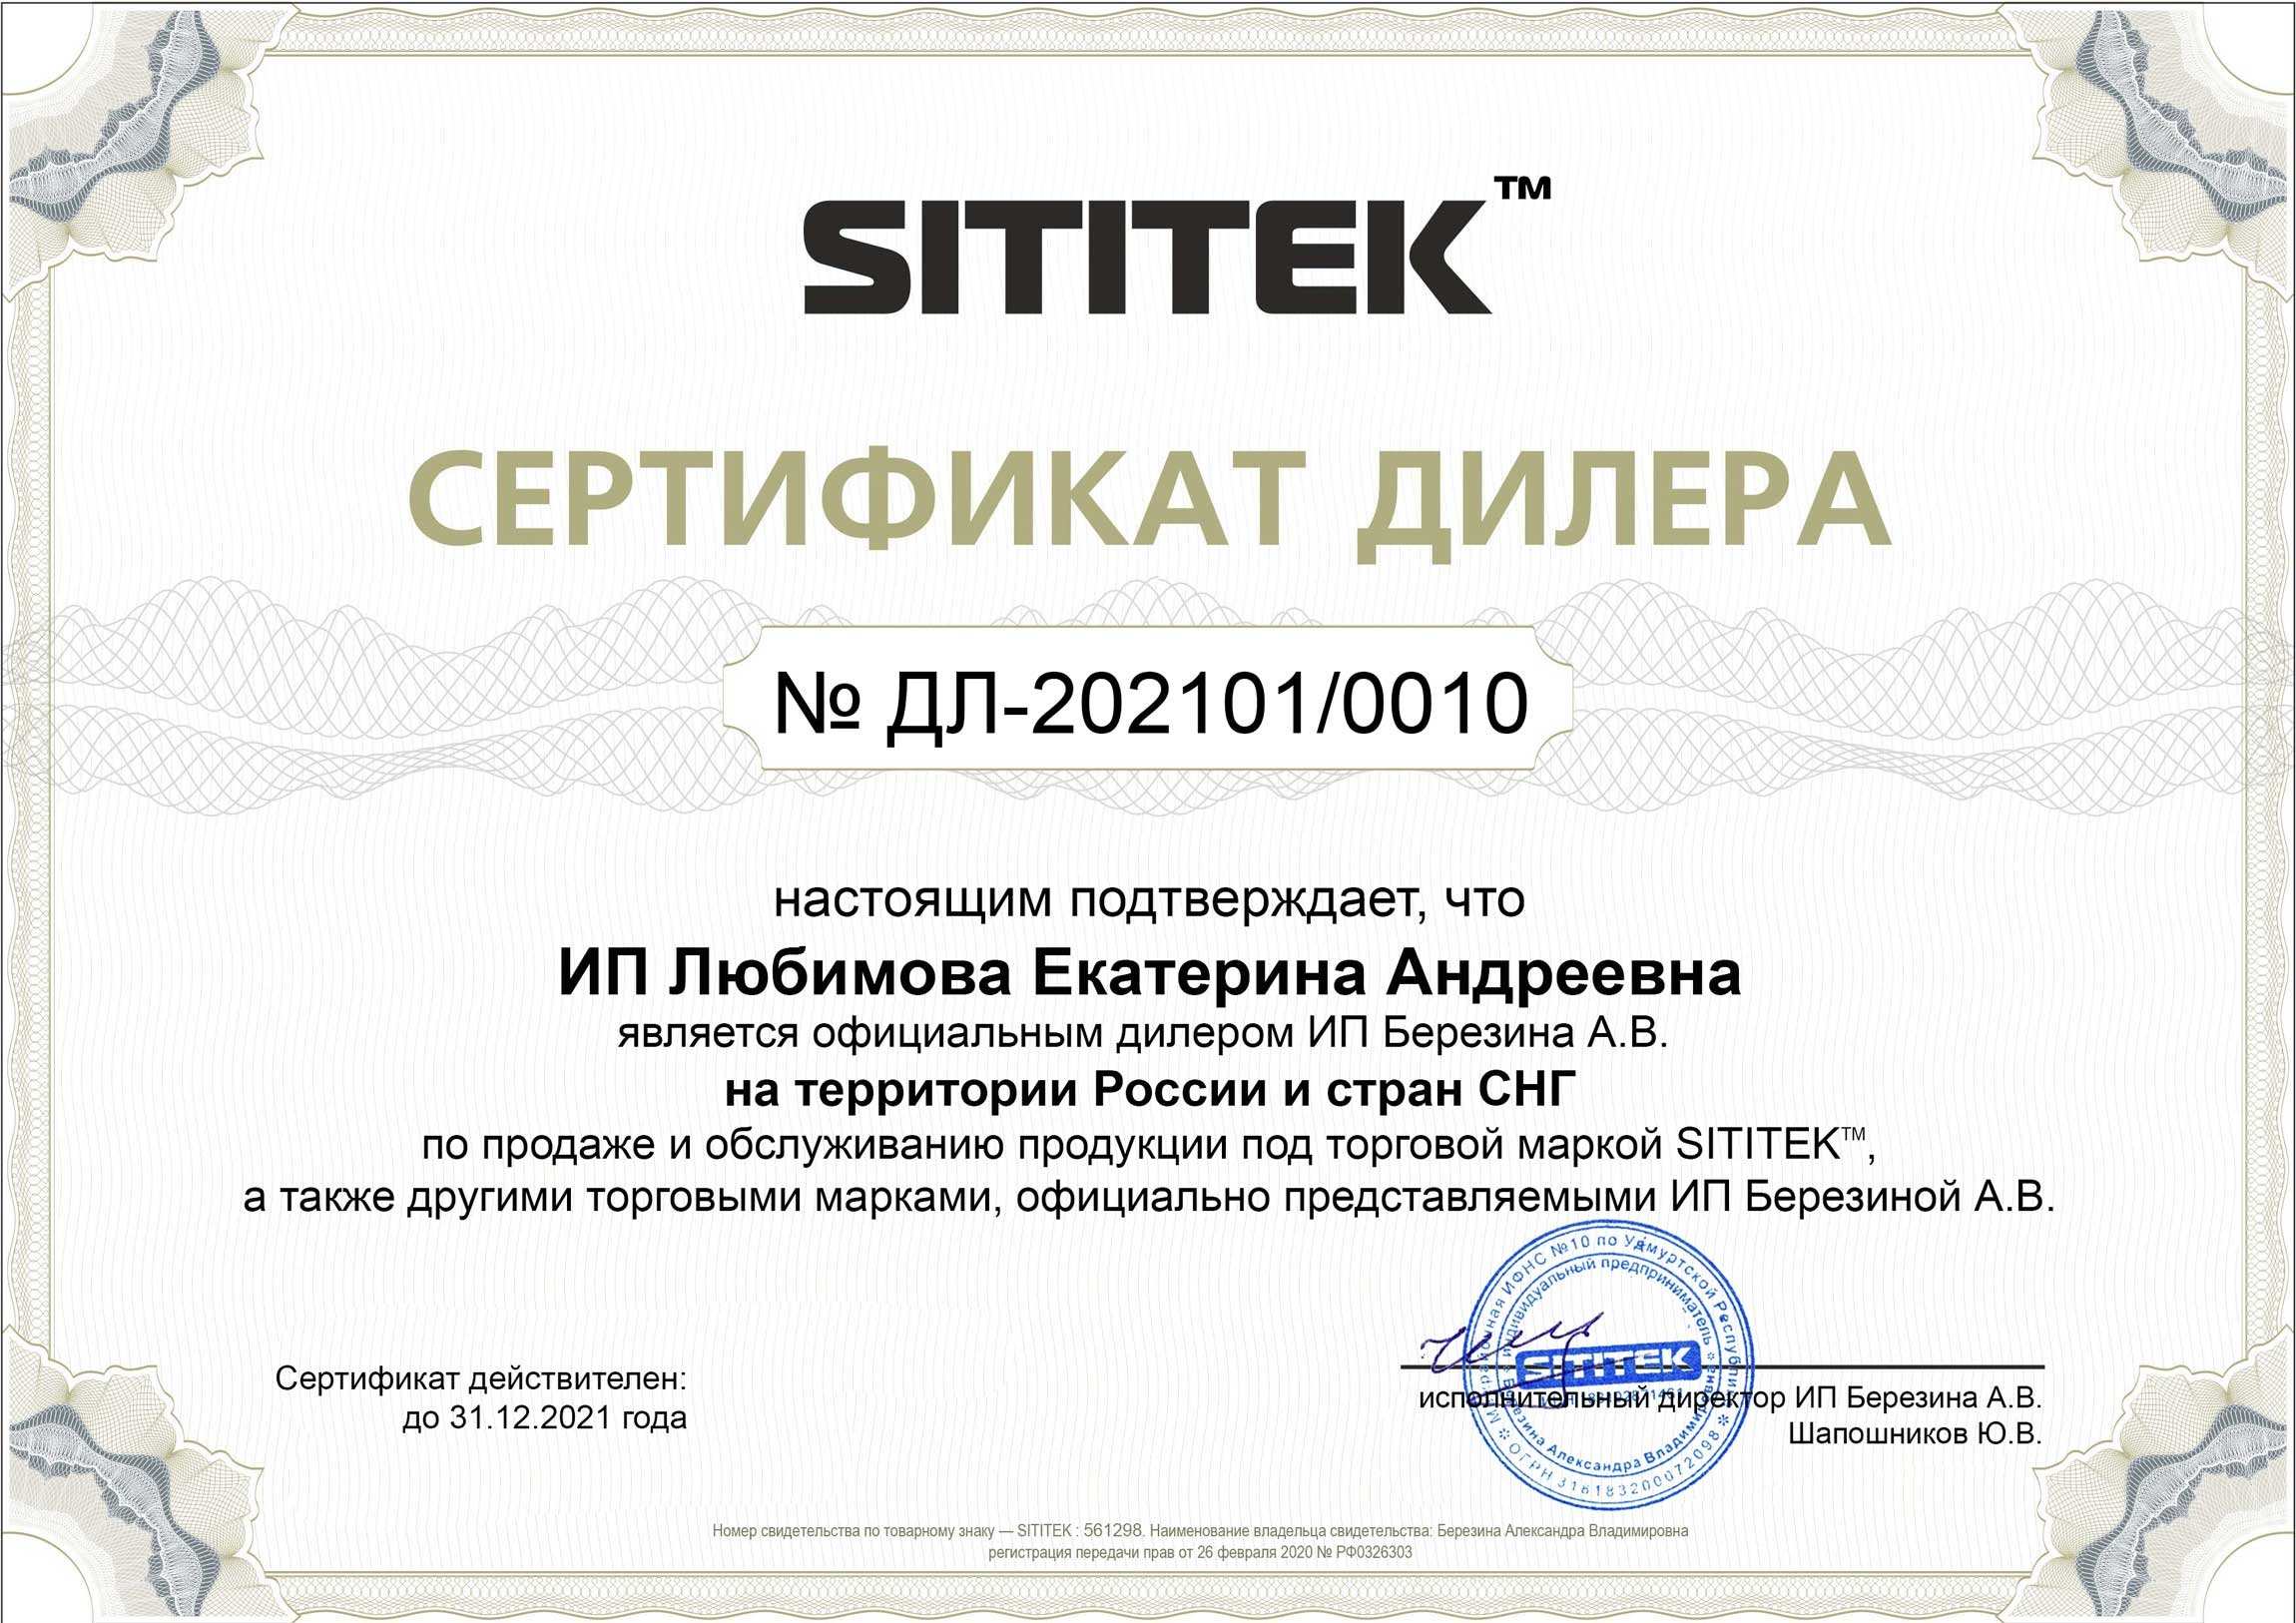 Наш магазин является официальным дилером продукции марки sititek и имеет соответствующий сертификат (нажмите для увеличения)